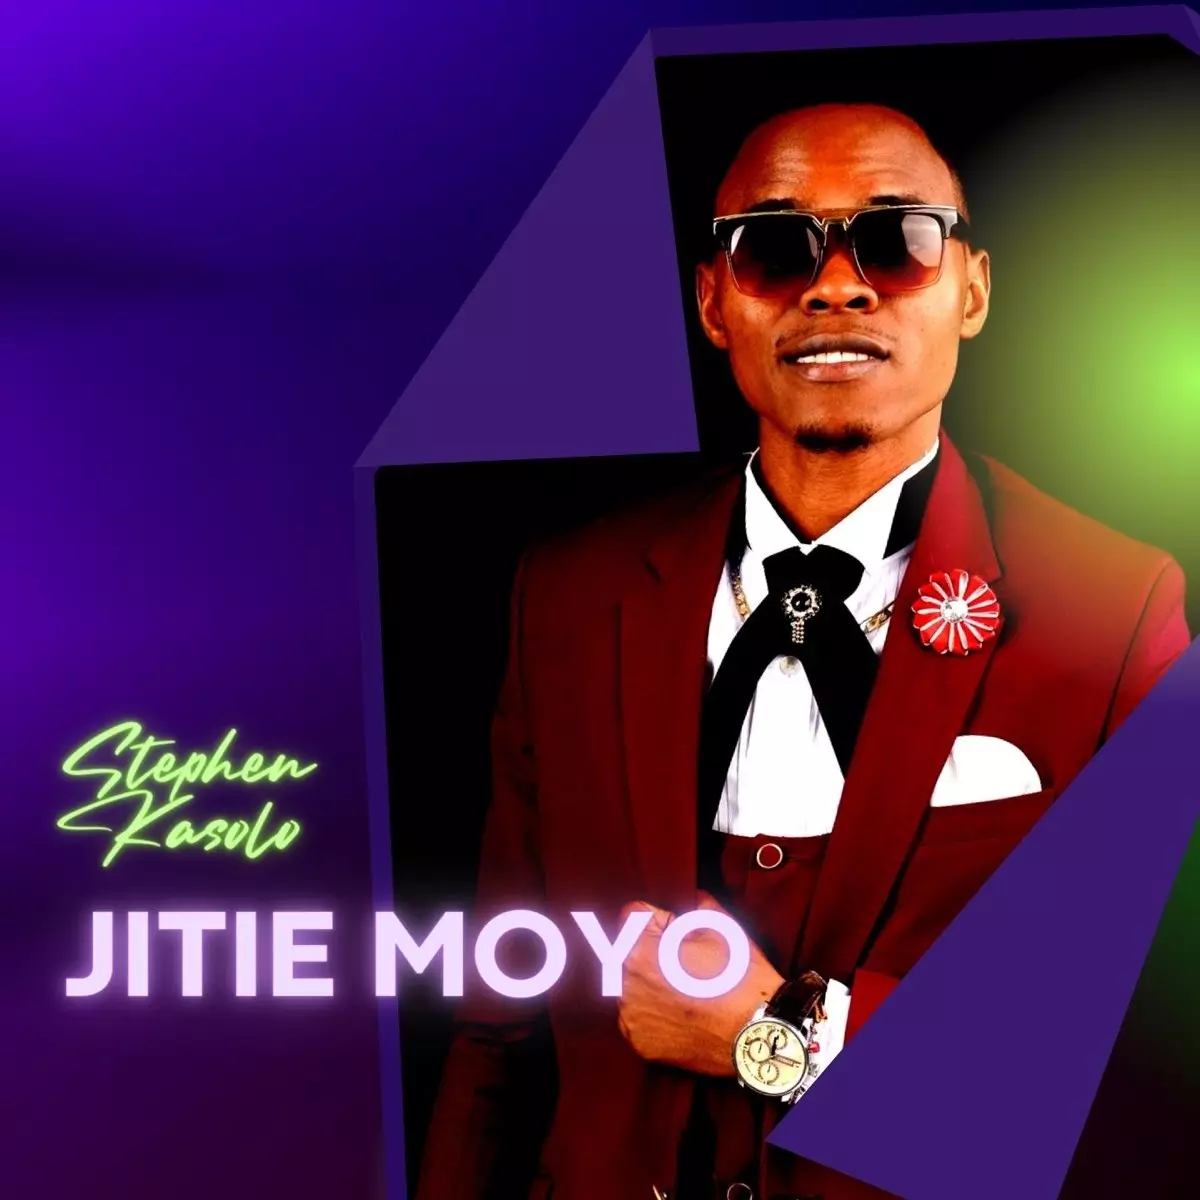 Jitie Moyo - Single by Stephen Kasolo on Apple Music